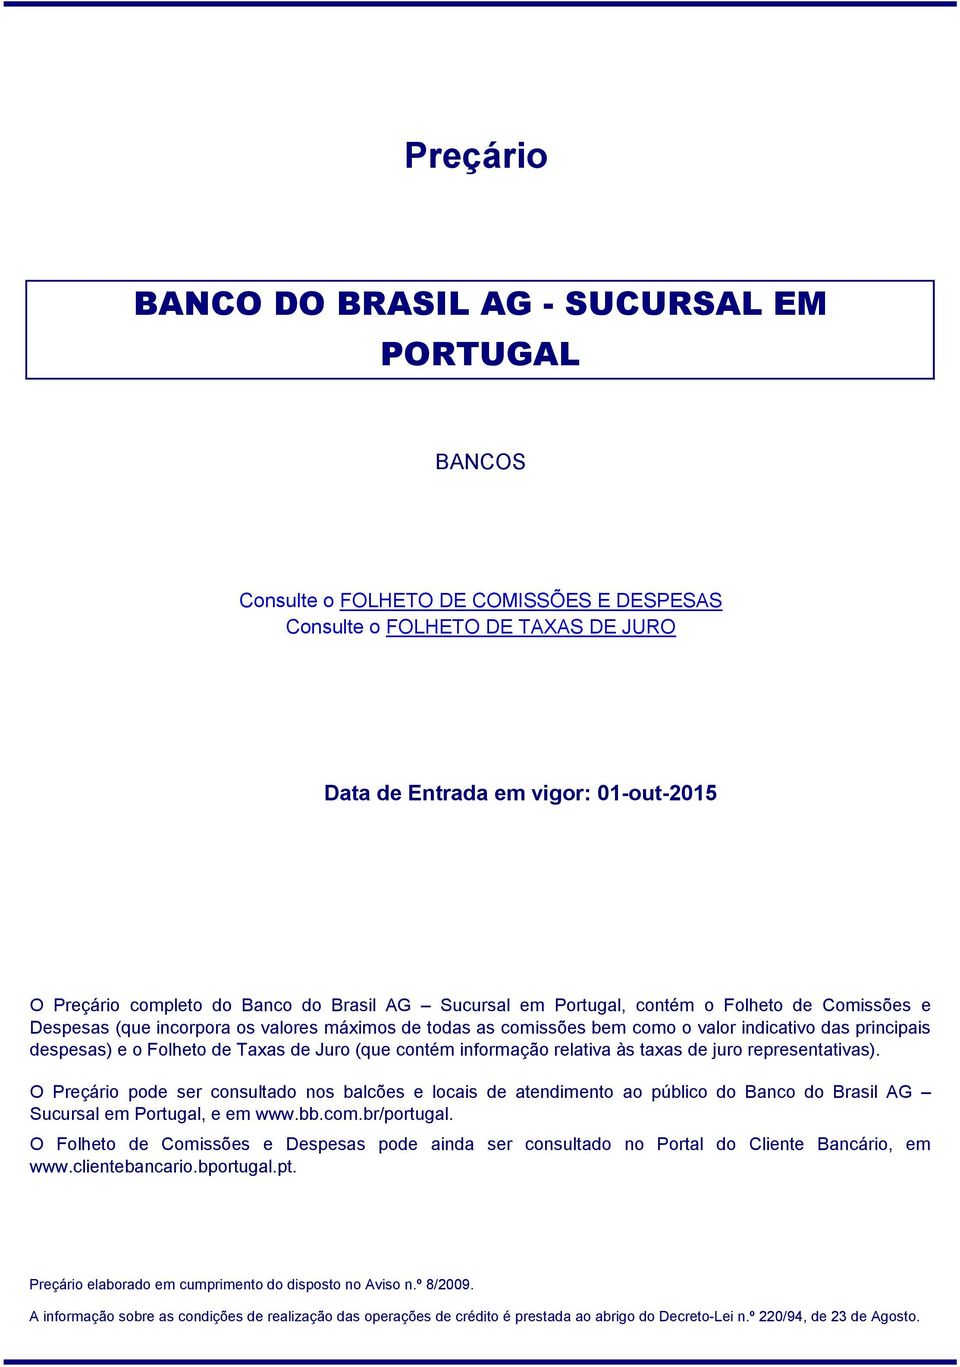 contém informação relativa às taxas de juro representativas). O Preçário pode ser consultado nos balcões e locais de atendimento ao público do Banco do Brasil AG Sucursal em Portugal, e em www.bb.com.